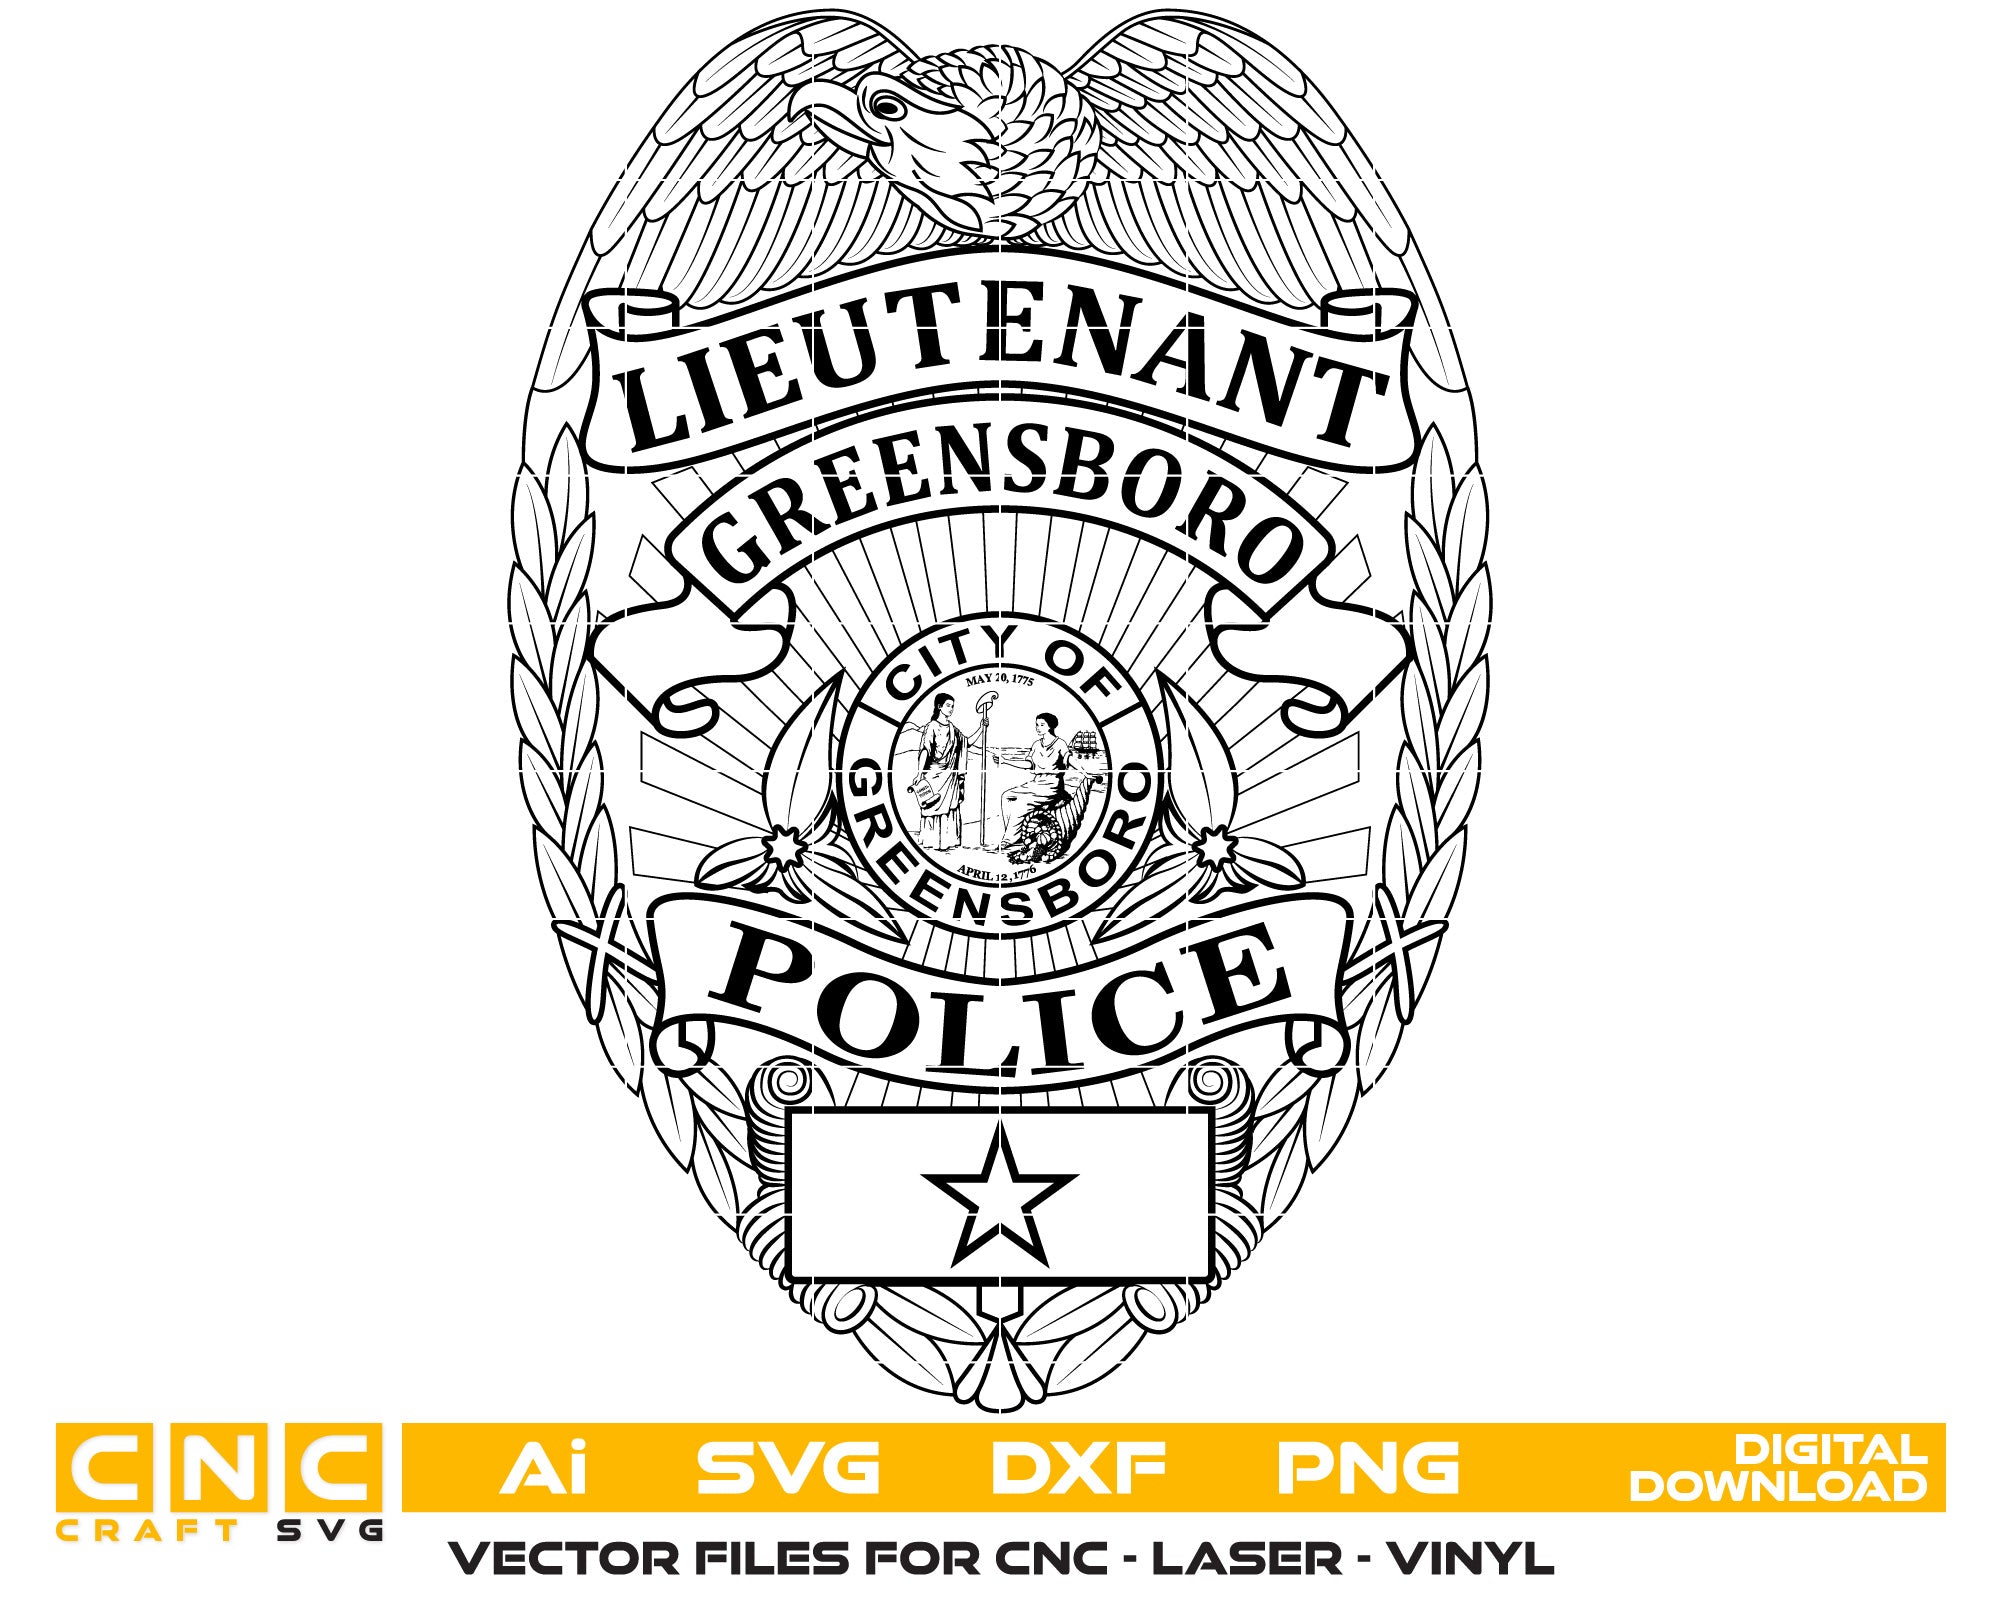 North Carolina Greensboro Police Lieutenant Badge Vector Art, Ai,SVG, DXF, PNG, Digital Files